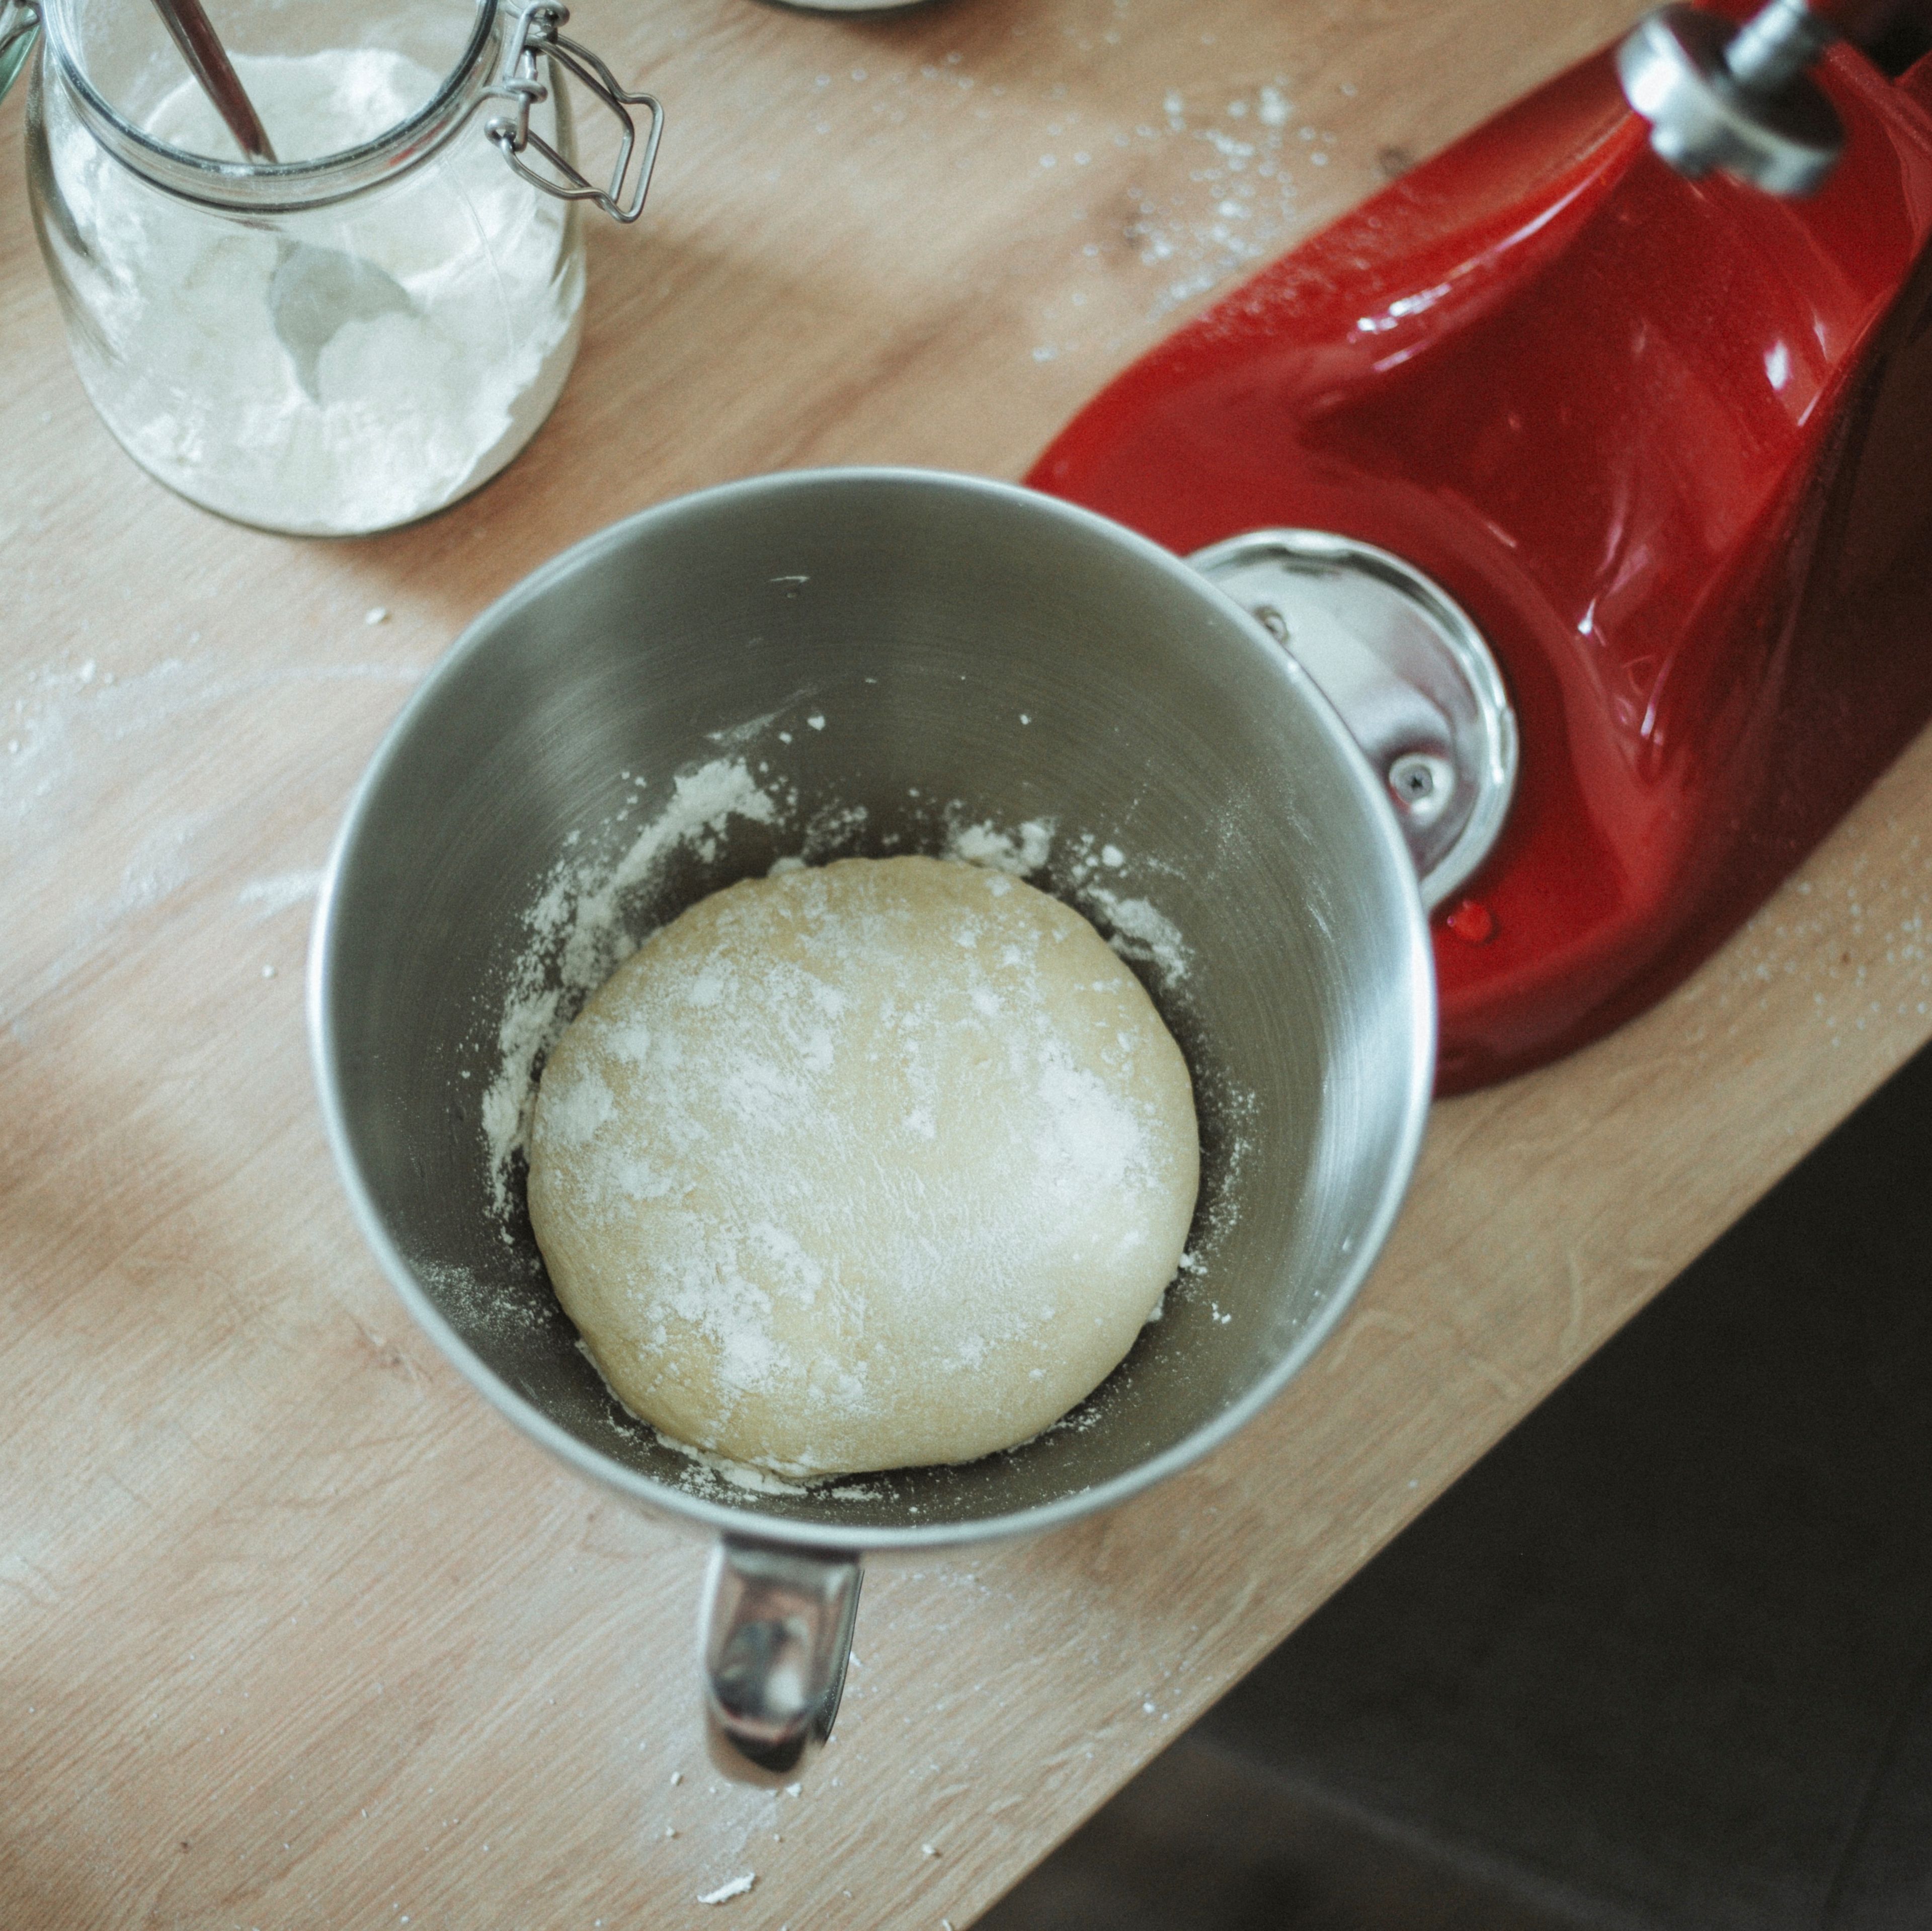 Falls der Teig zu klebrig ist, noch etwas Mehl unterkneten. Den Hefeteig zu einer Kugel formen, mit Mehl bedecken und mit einem feuchten Küchentuch abgedeckt an einem warmen Ort 1 – 2 Stunden gehen lassen.